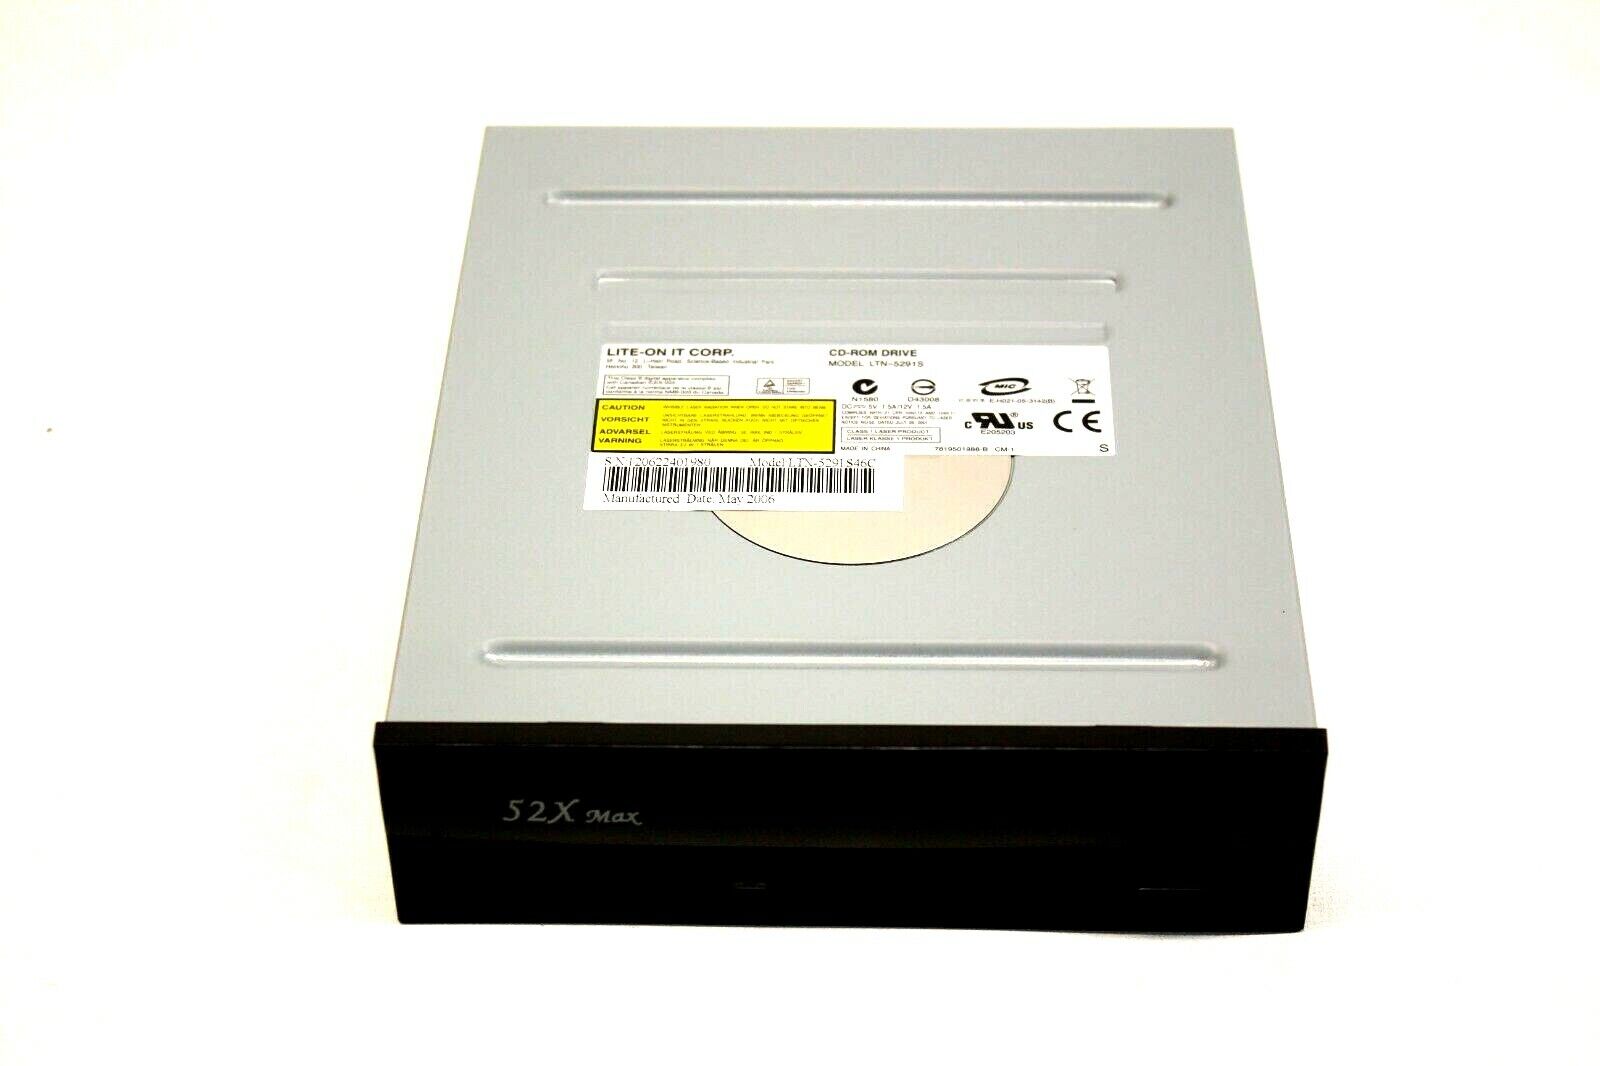 LTN-5291S LITE-ON LTN-5291S46C Black 52X CD-ROM IDE Drive NEW~